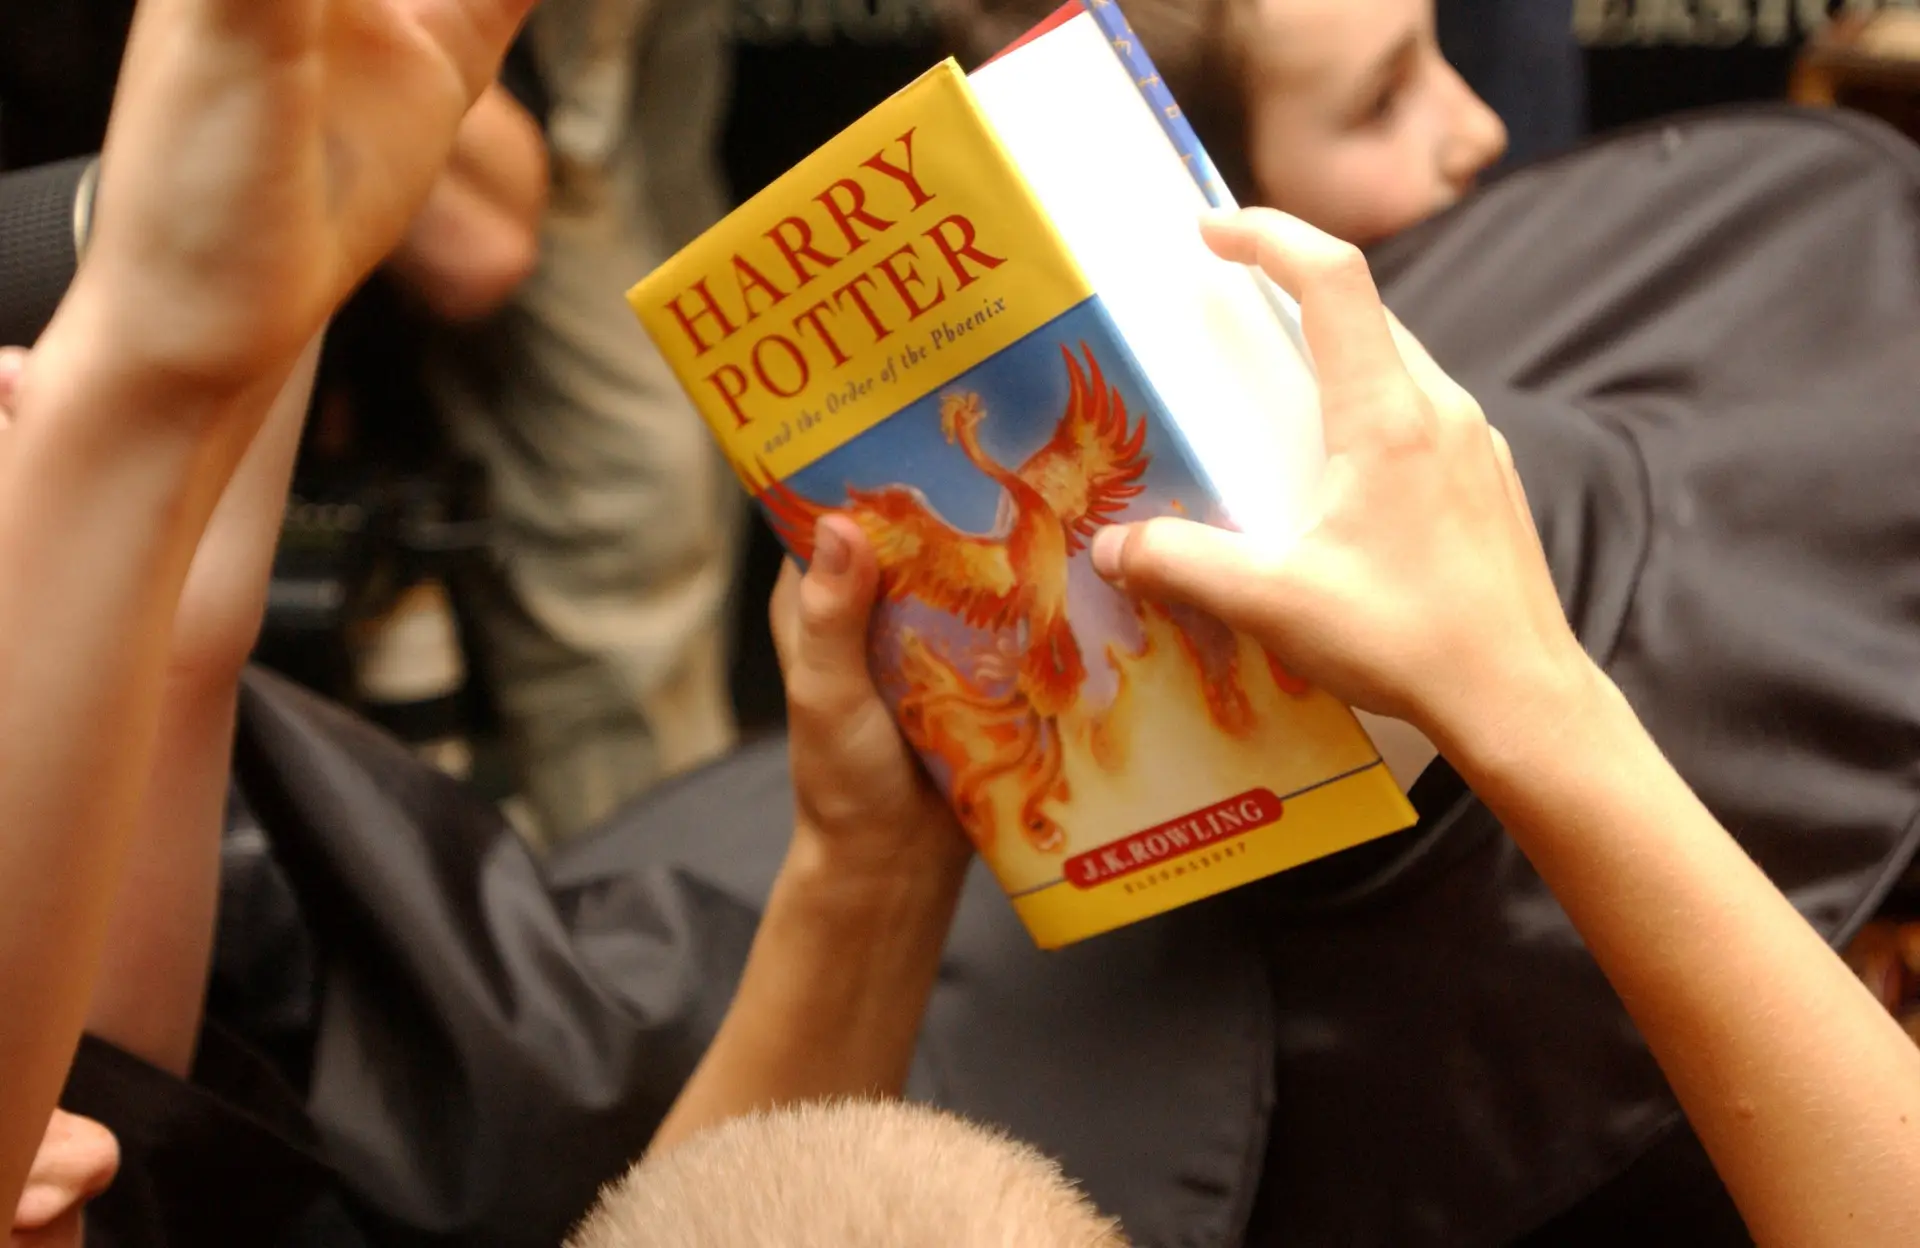 Livri "Harry Potter e a ordem de fénix"